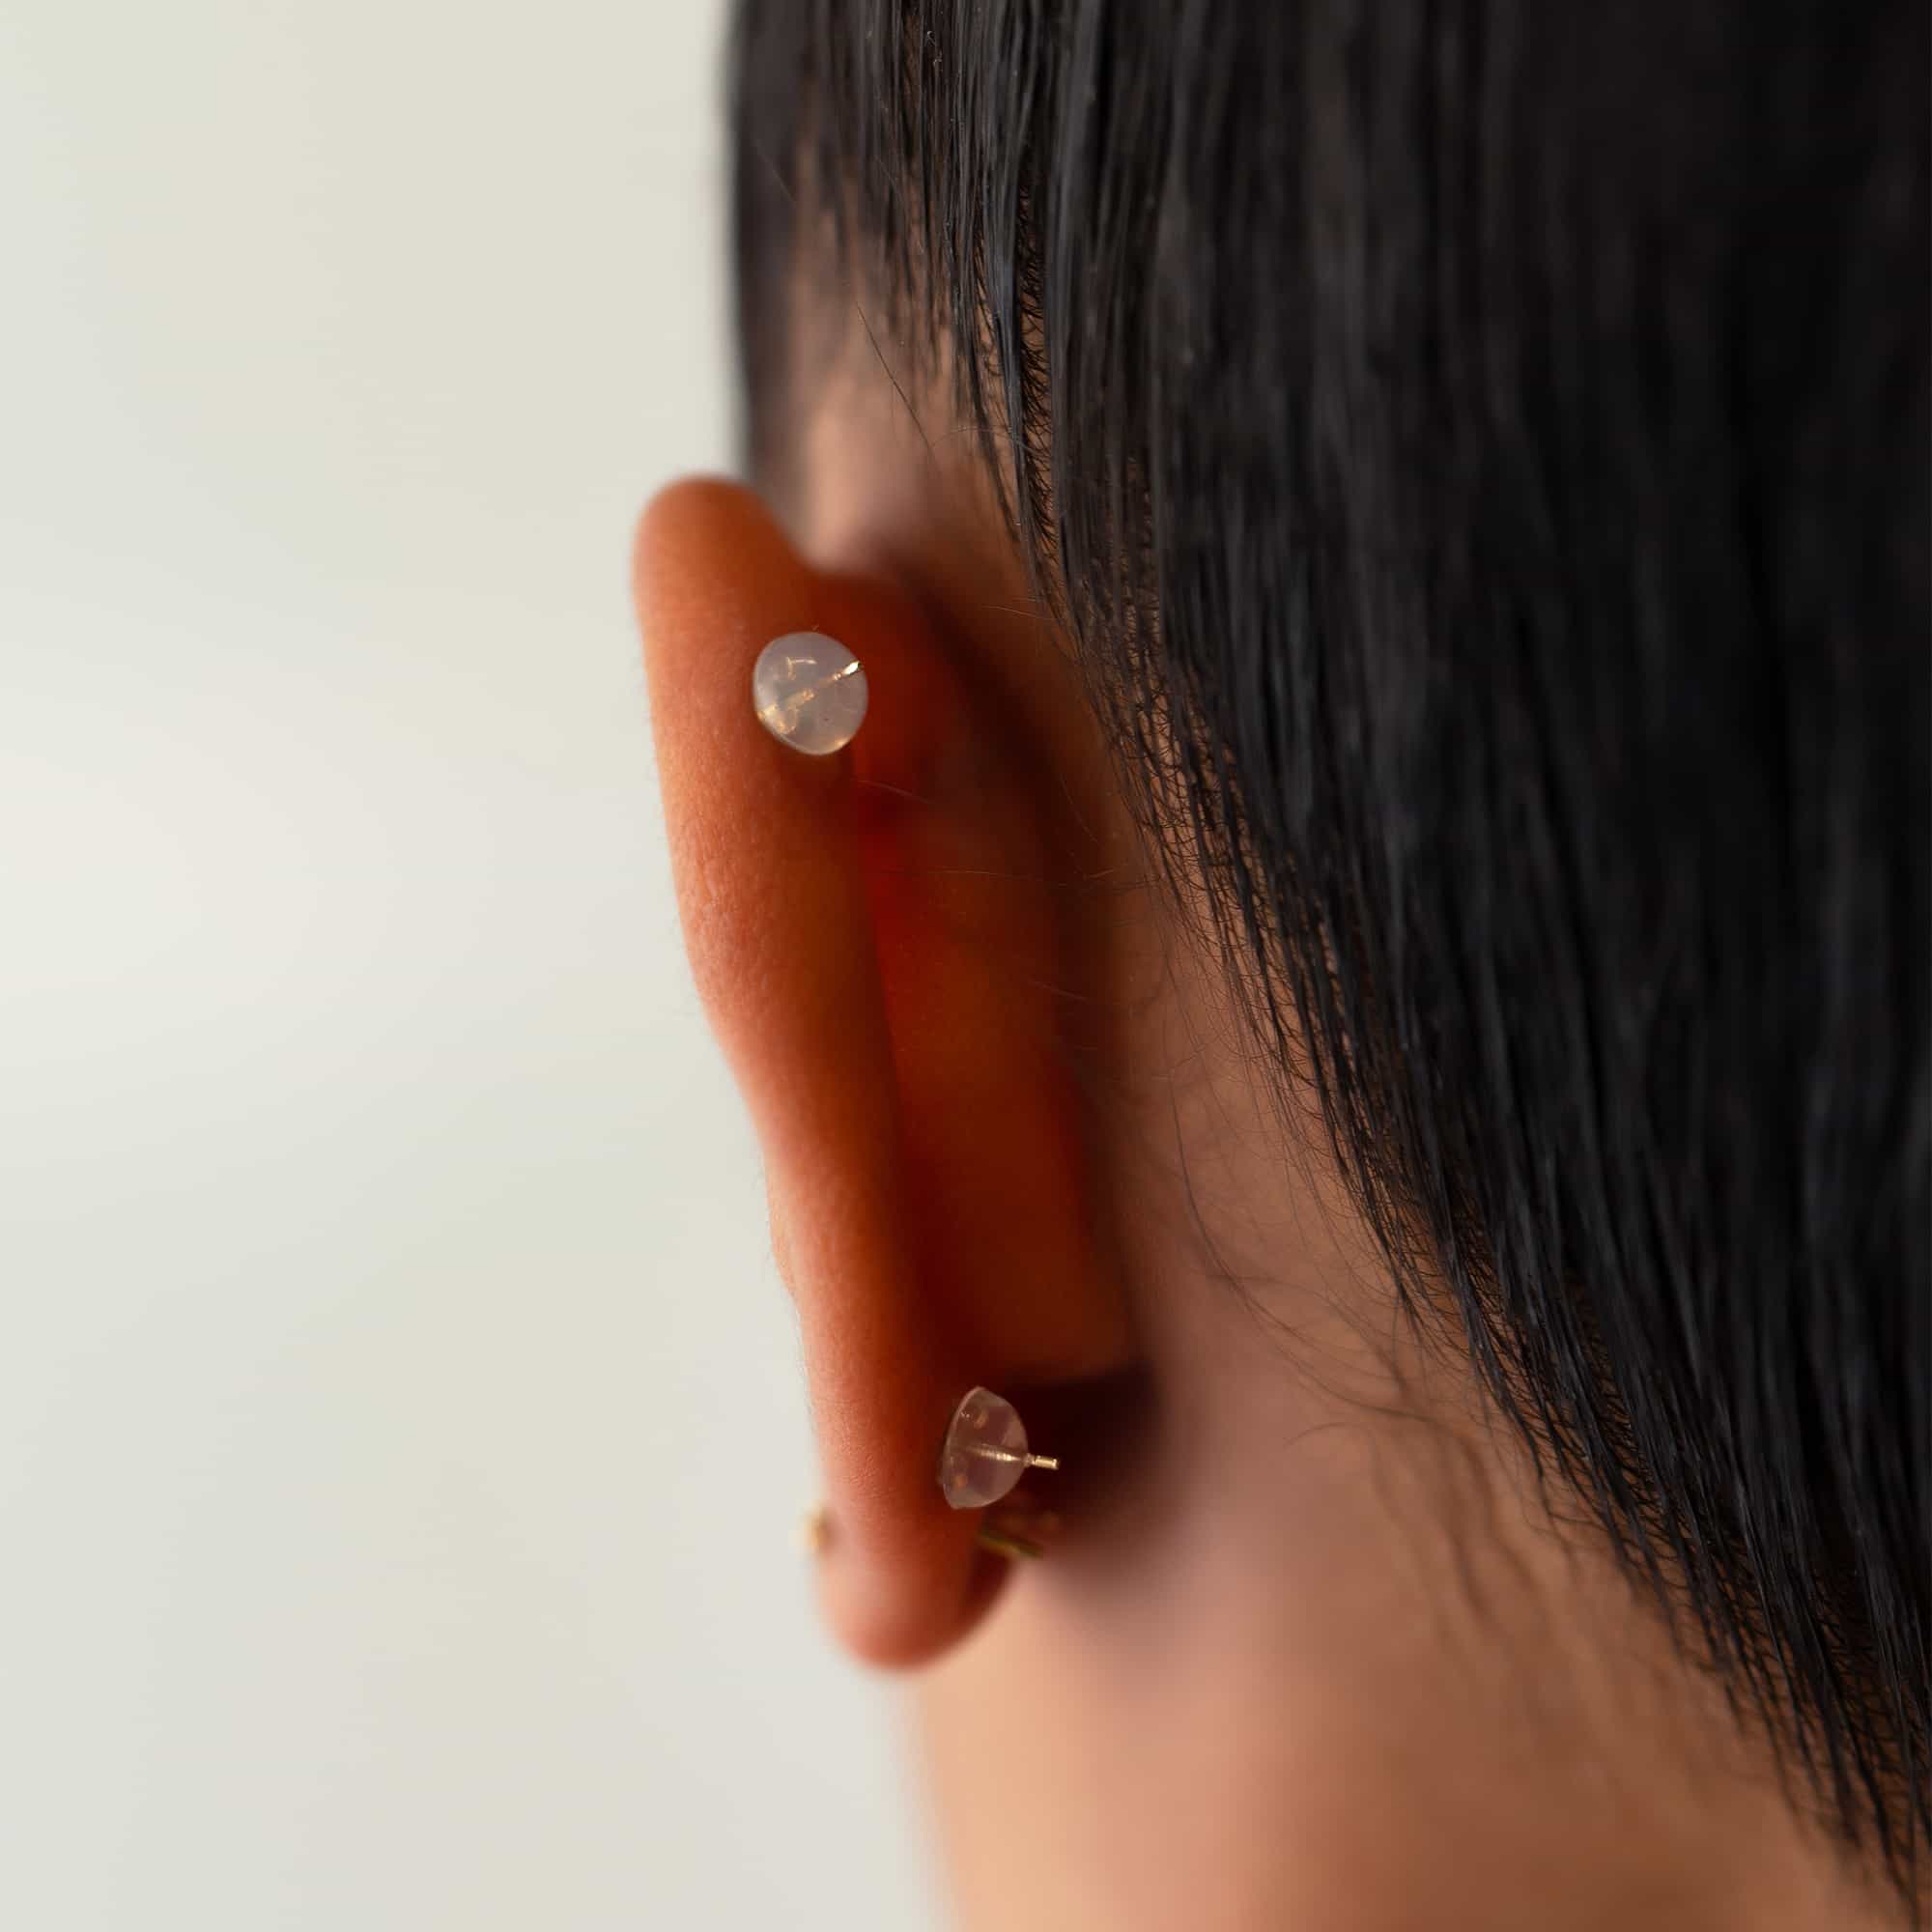 Piercing Earring Backing 18 Gauge 1/4 / Pair